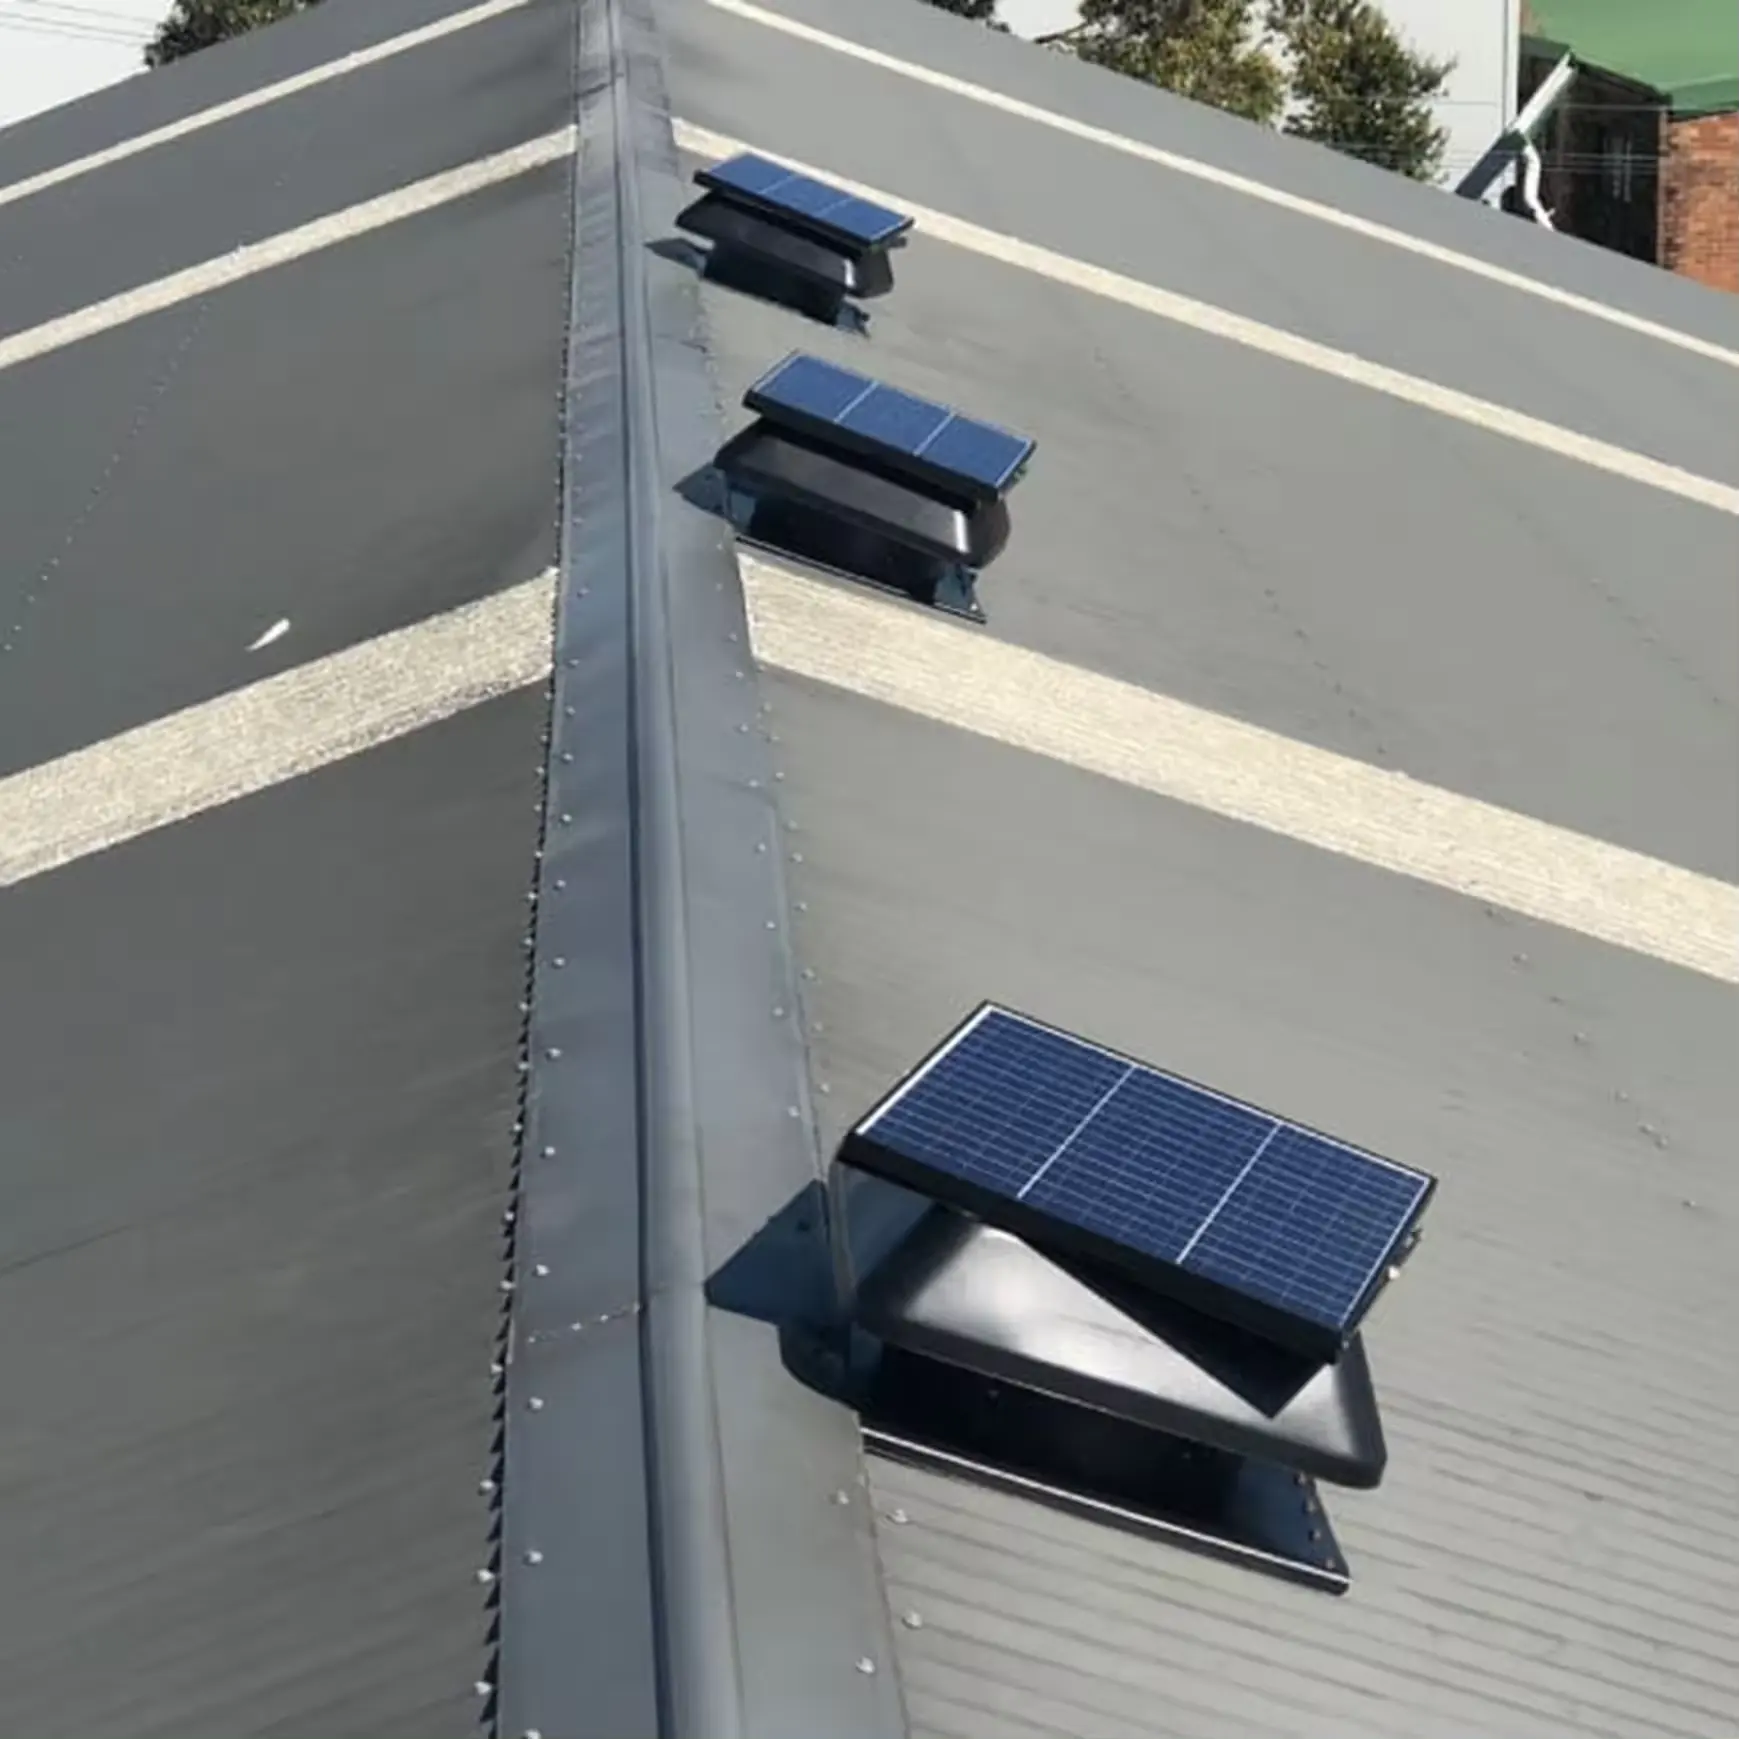 مروحة عادم علوية صناعية بلوحة طاقة شمسية 50 وات مزودة بمروحة ذكية هجينة تعمل بالطاقة الشمسية مروحة سقف ذات صلة